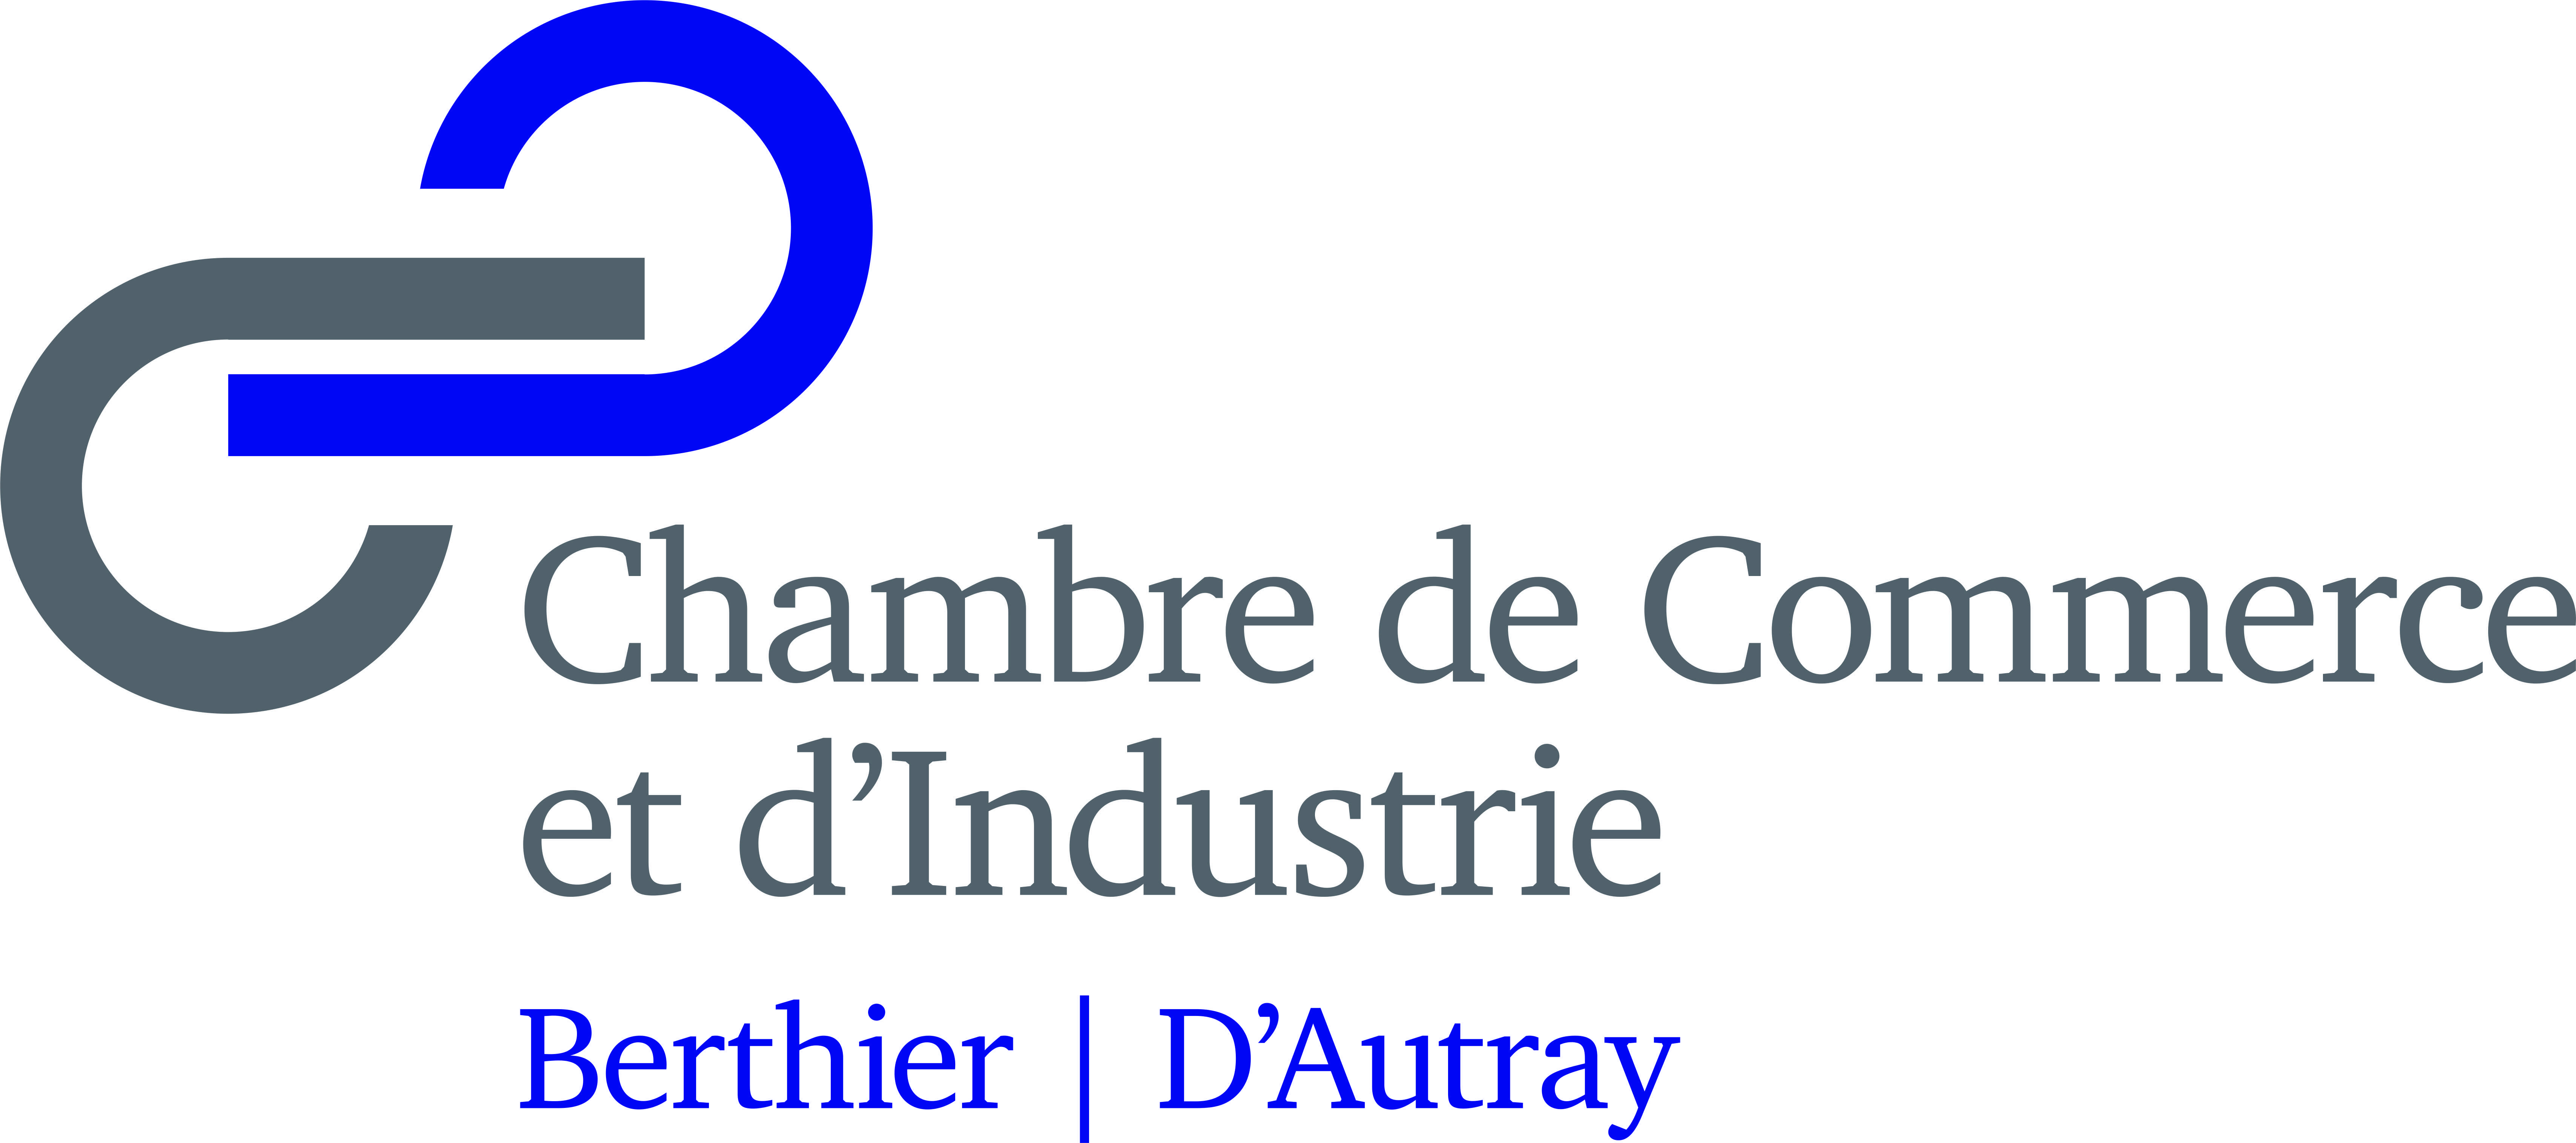 Logo Chambre de commerce et d'Industrie Berthier d'Autray (CCIBA)